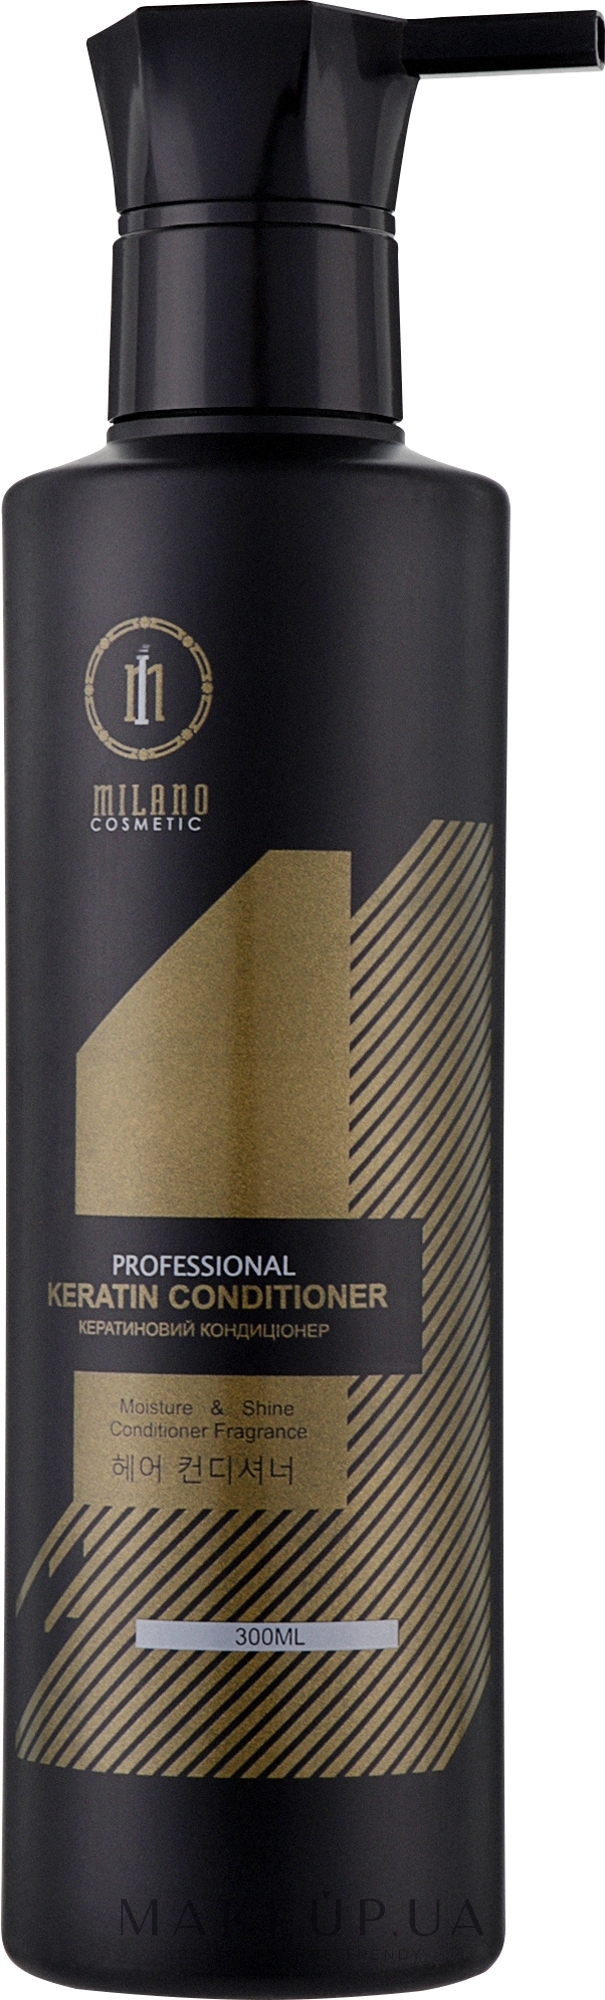 Кондиционер для волос кератиновый - Milano Cosmetic Professional Keratin Conditioner — фото 300ml